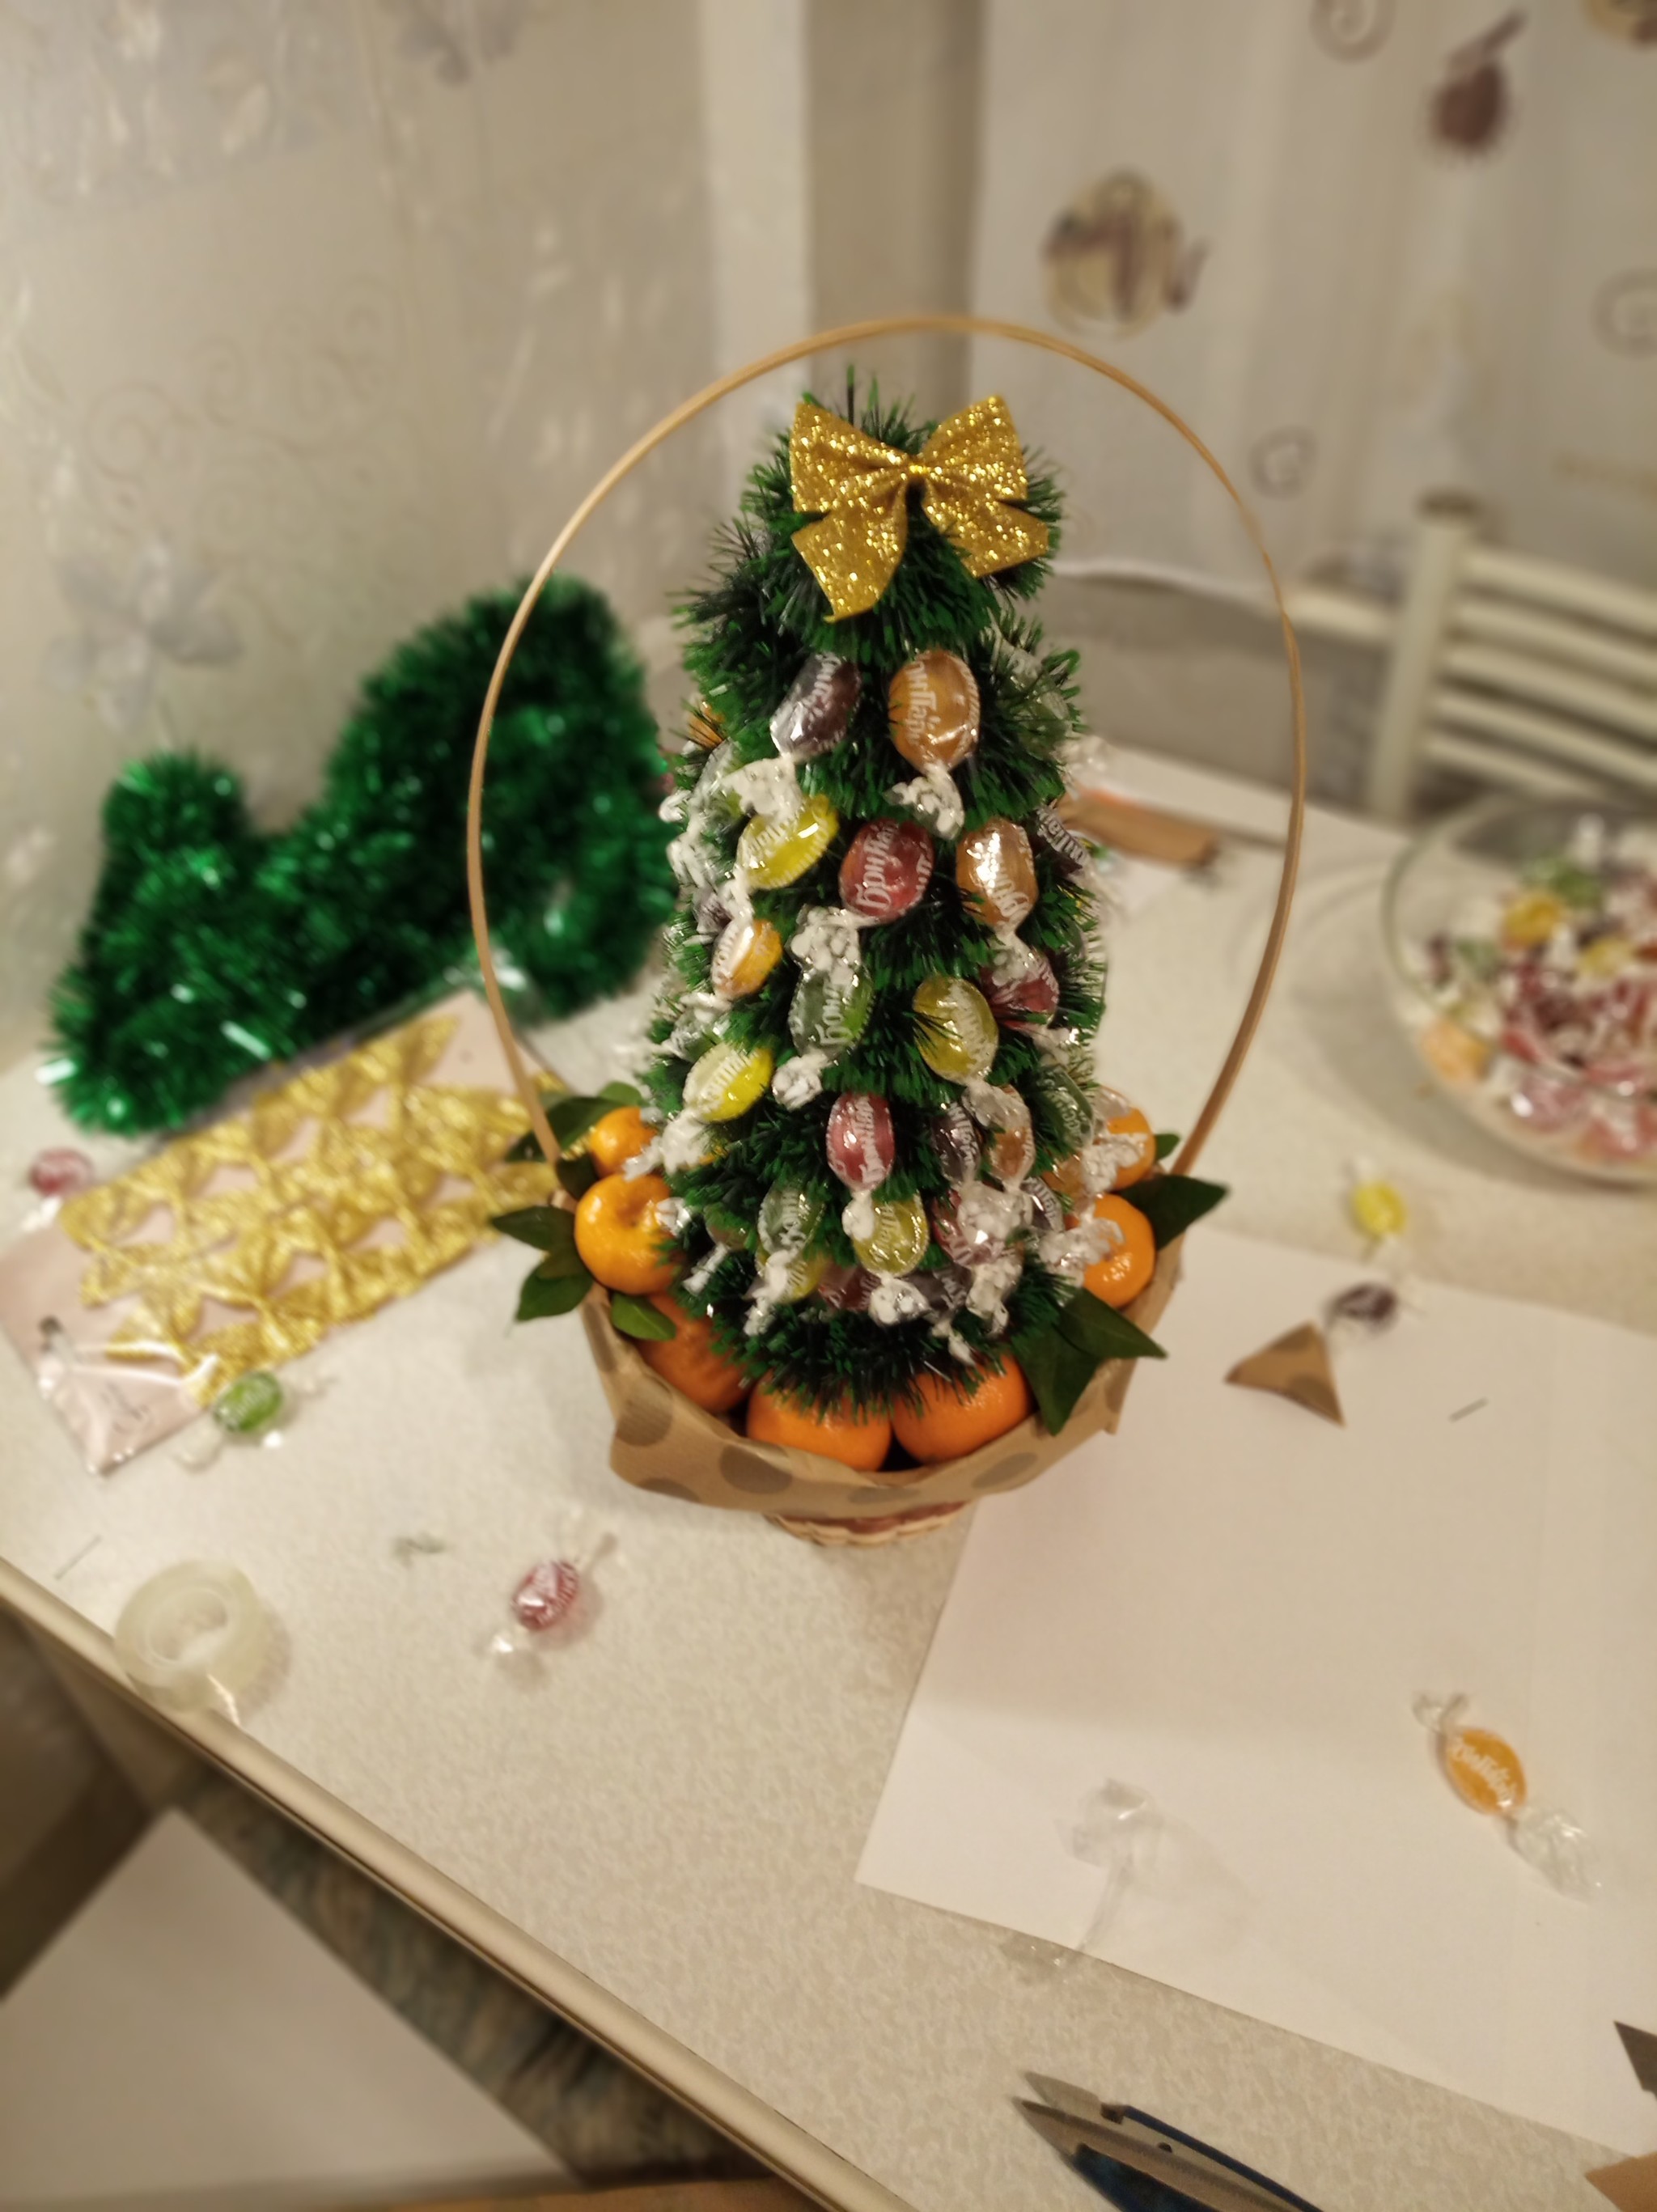 Бутылка шампанского и конфеты для создания новогодней елки